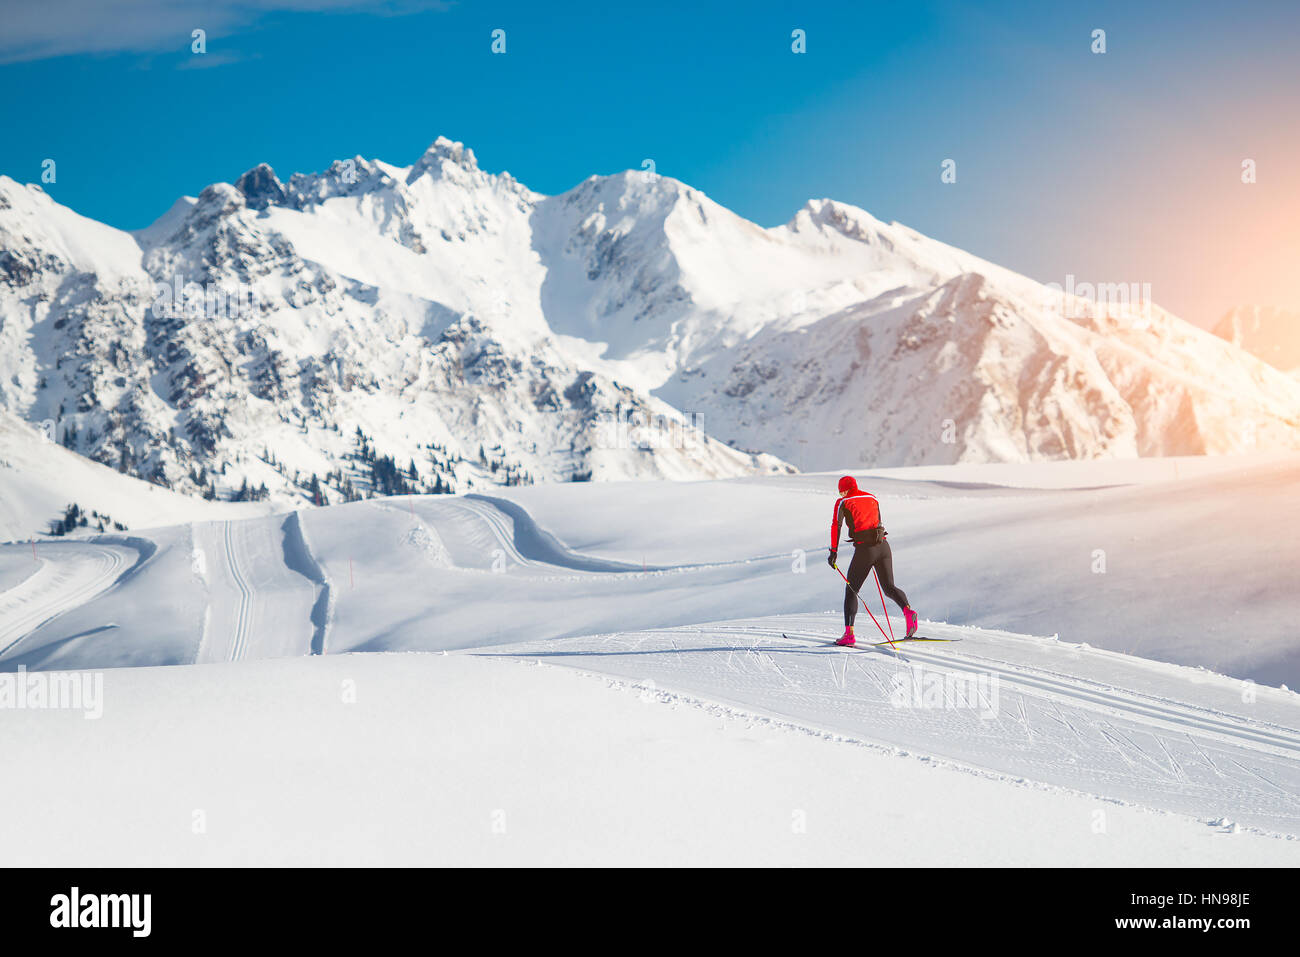 Le ski de fond technique classique pratiqué par l'homme dans un beau sentier panoramique Banque D'Images